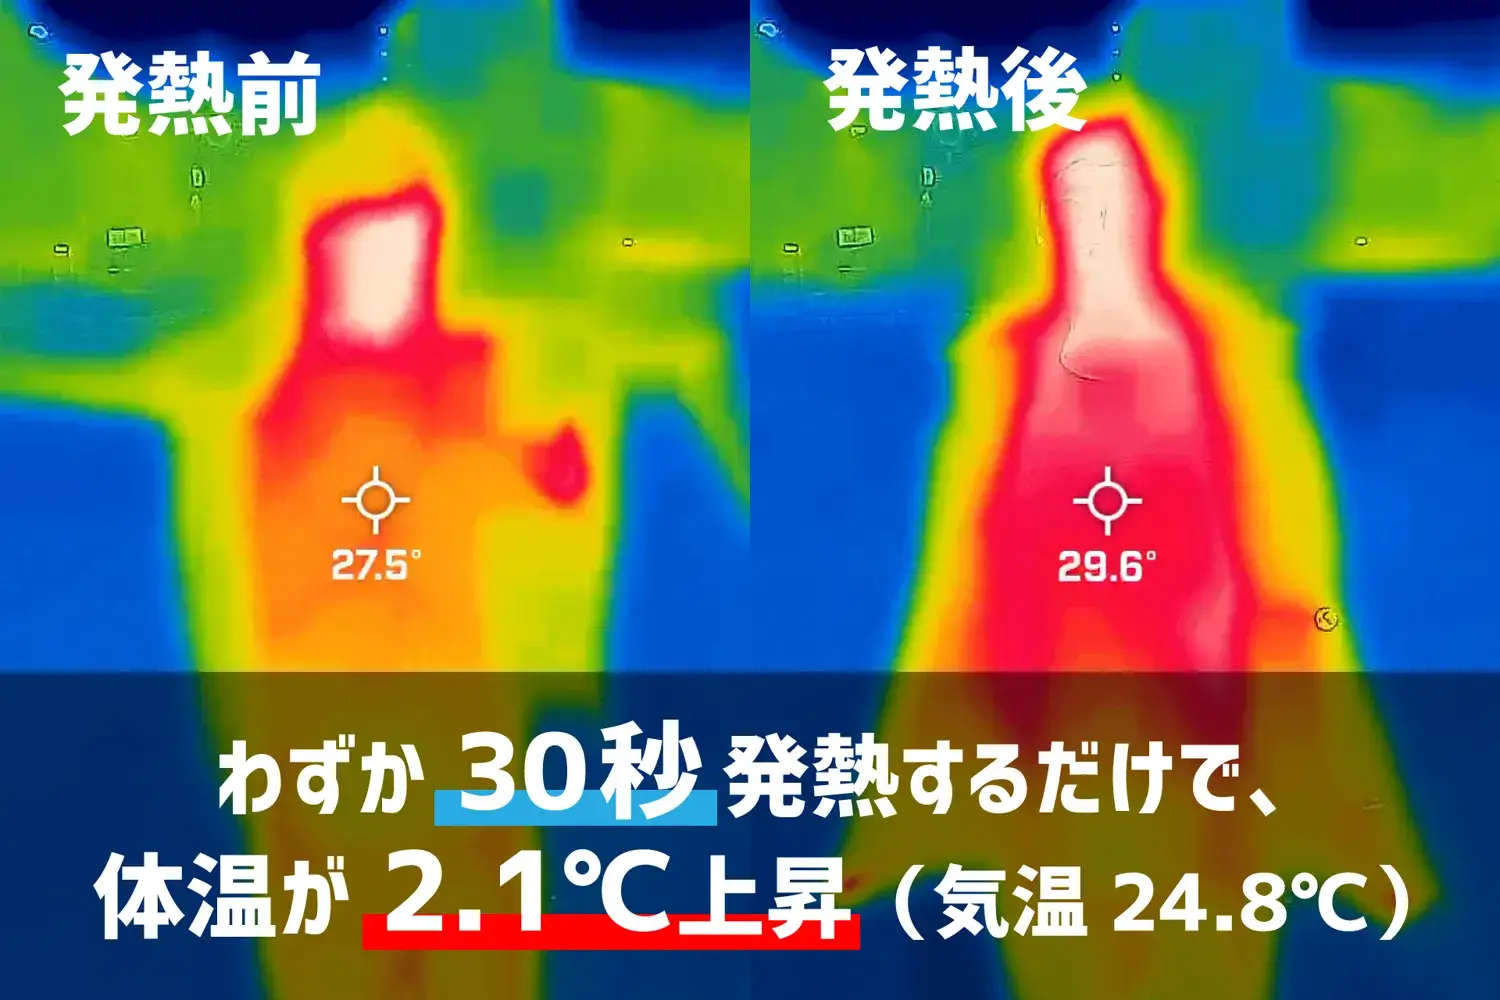 ラシカル フェアリーノヴァ2 ジャケットの発熱機能で体温上昇を実験した結果